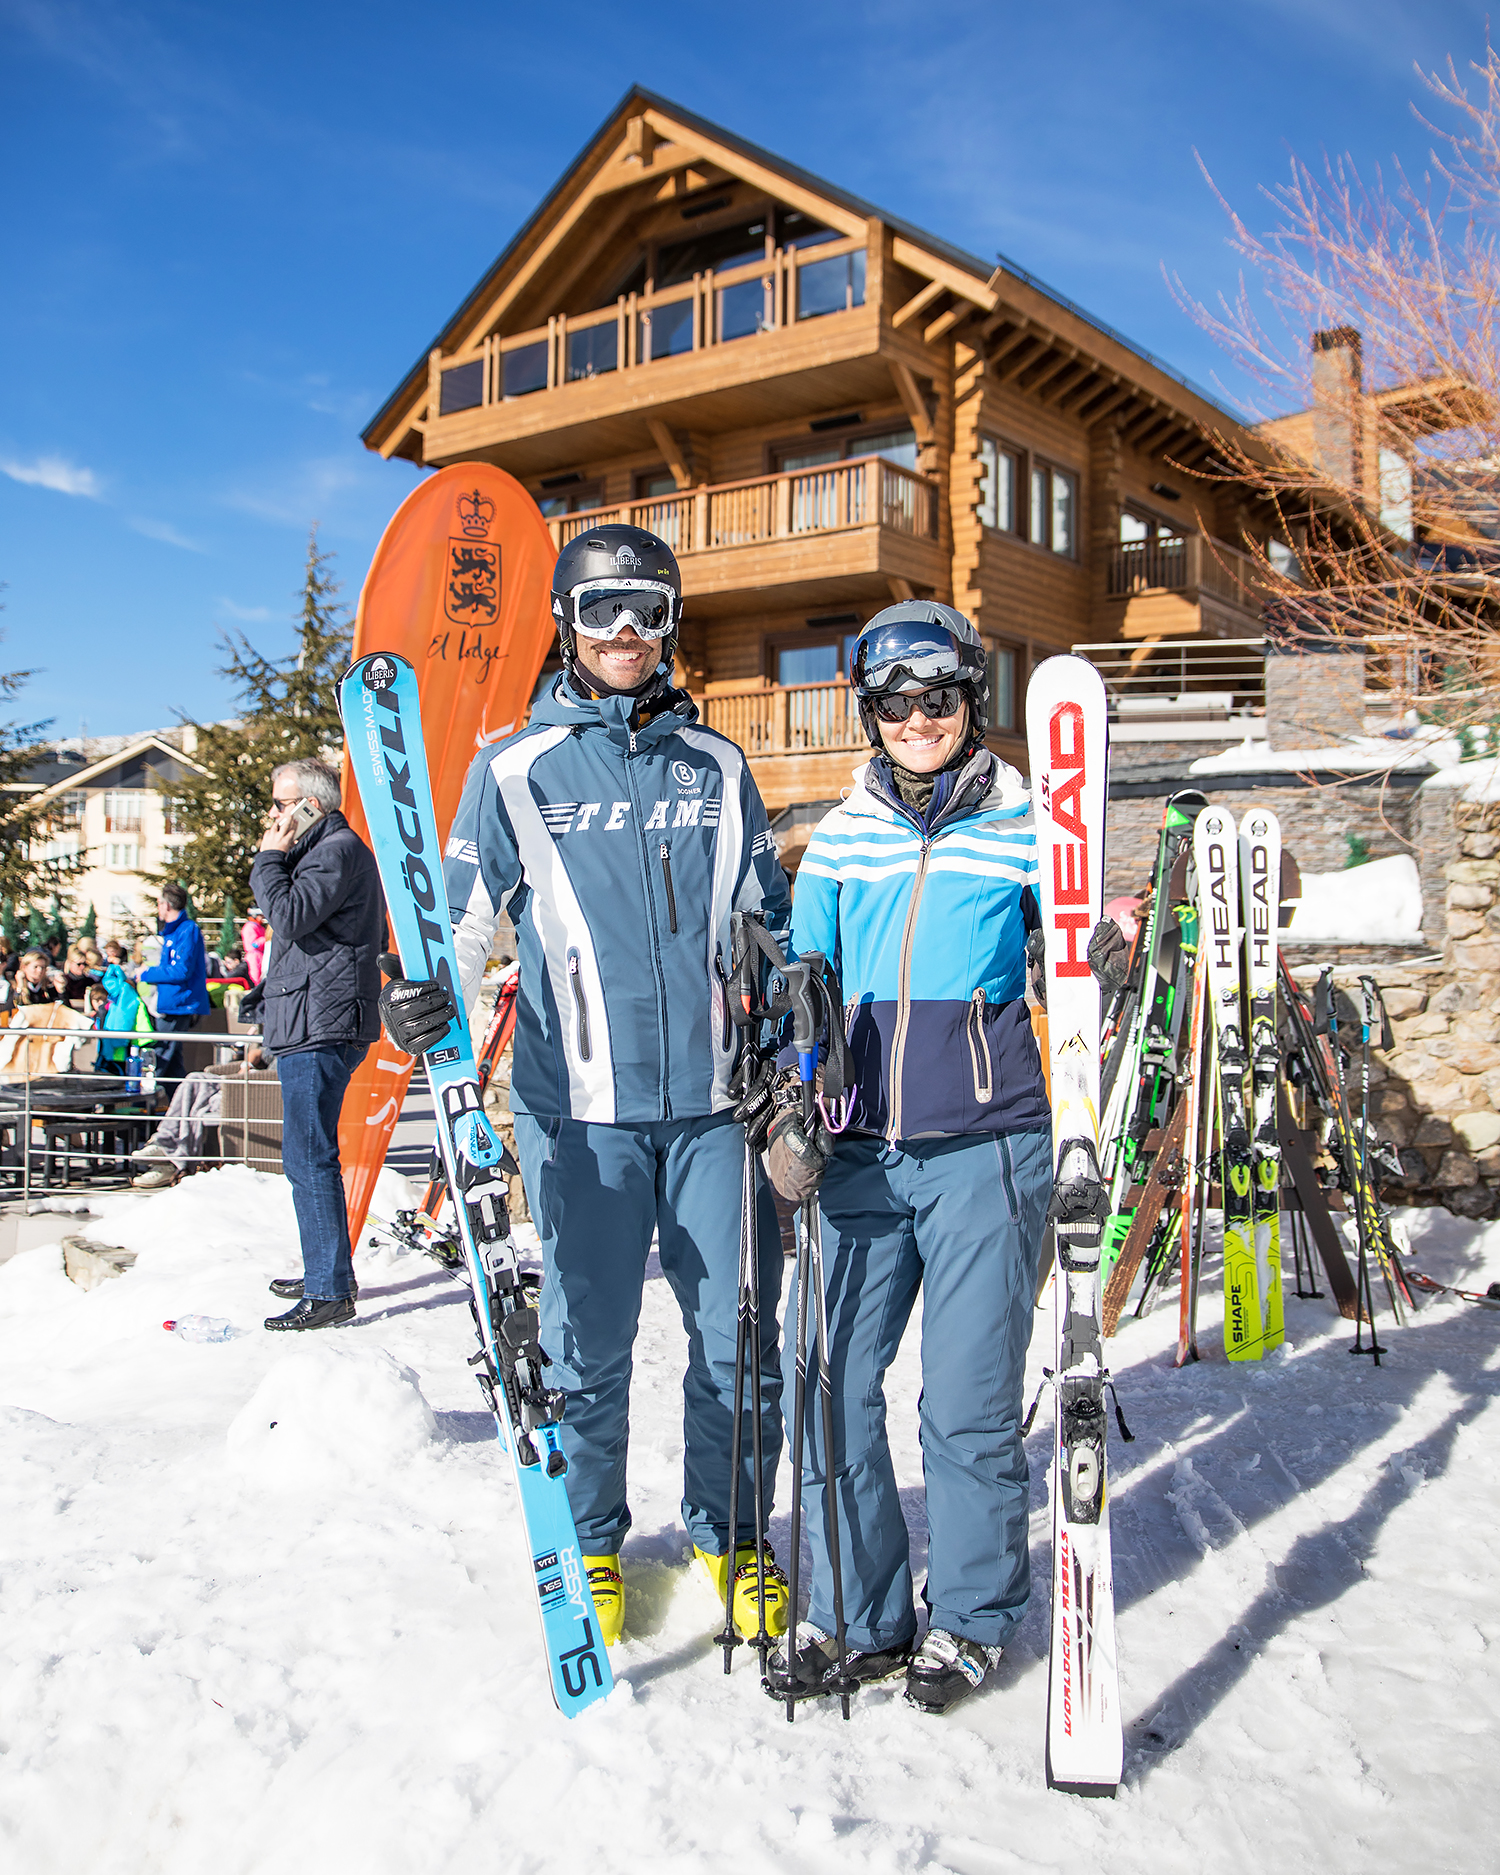 Our Ski Resort - El Lodge